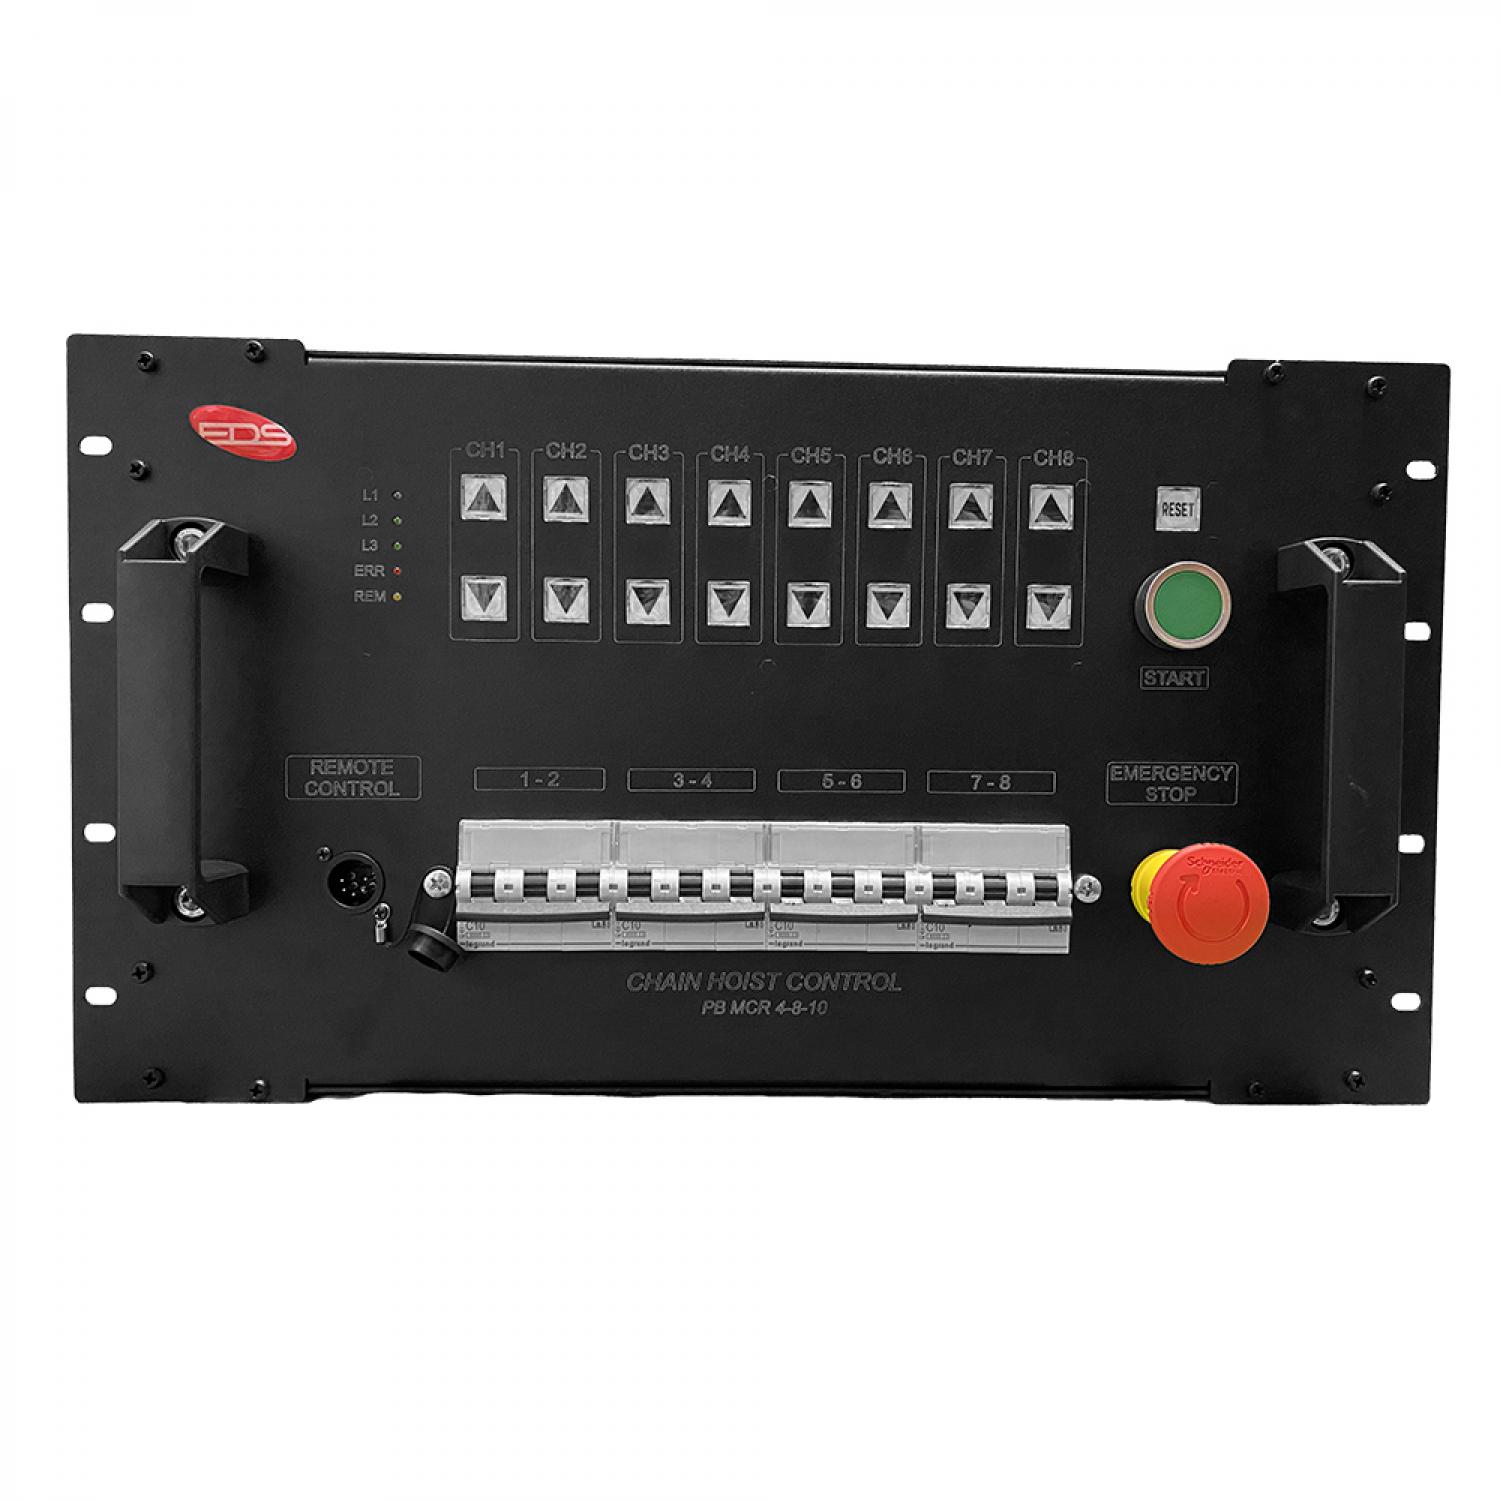 Мотор-контроллер на 8 лебедок PB MCR 4-8-10